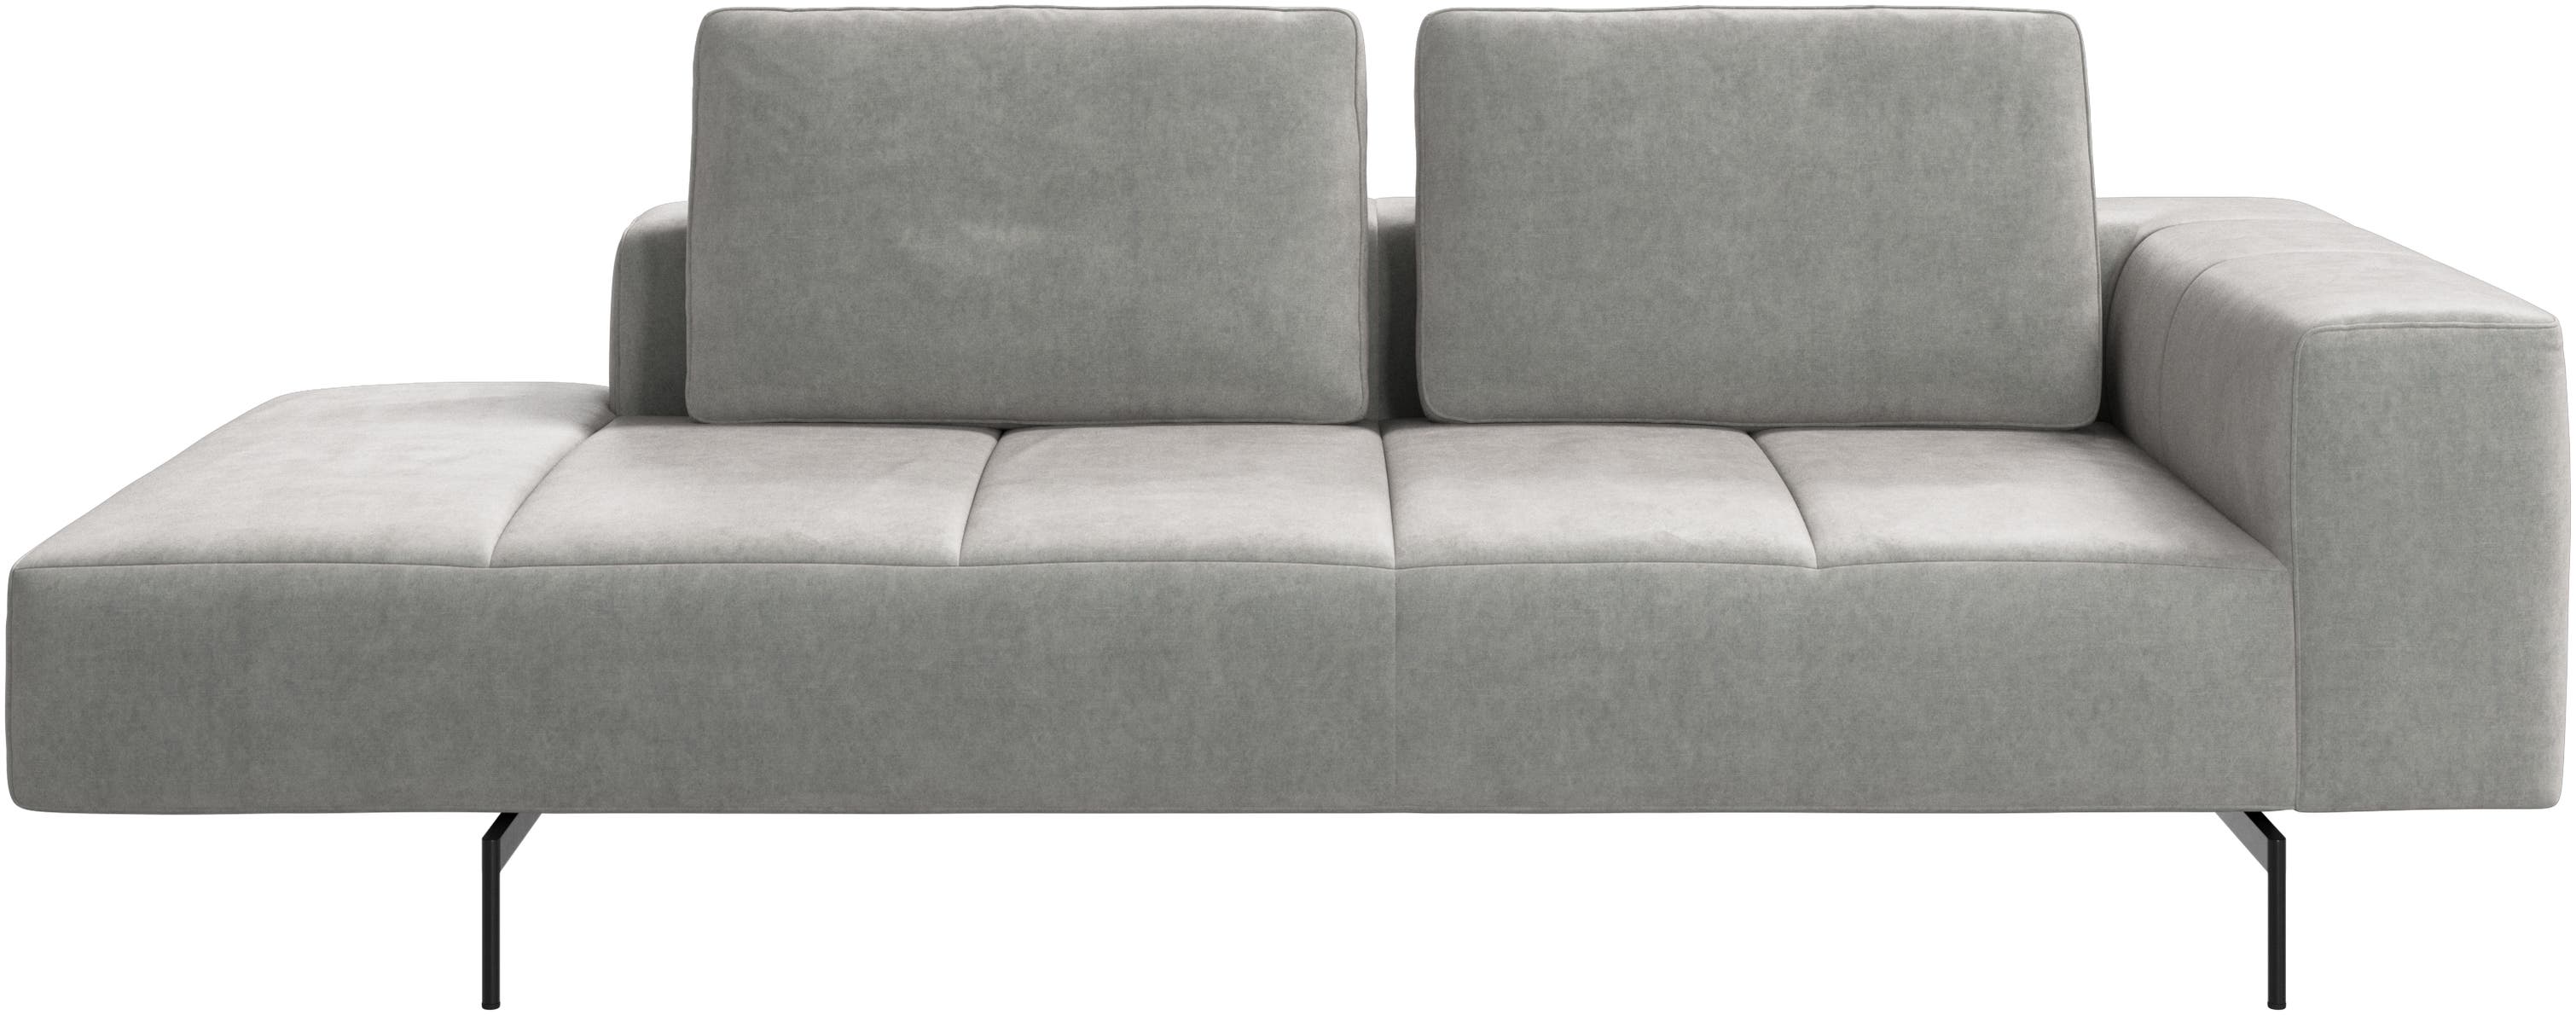 Amsterdam módulo de descanso para sofá, apoio de braço á direita, aberto á esquerda